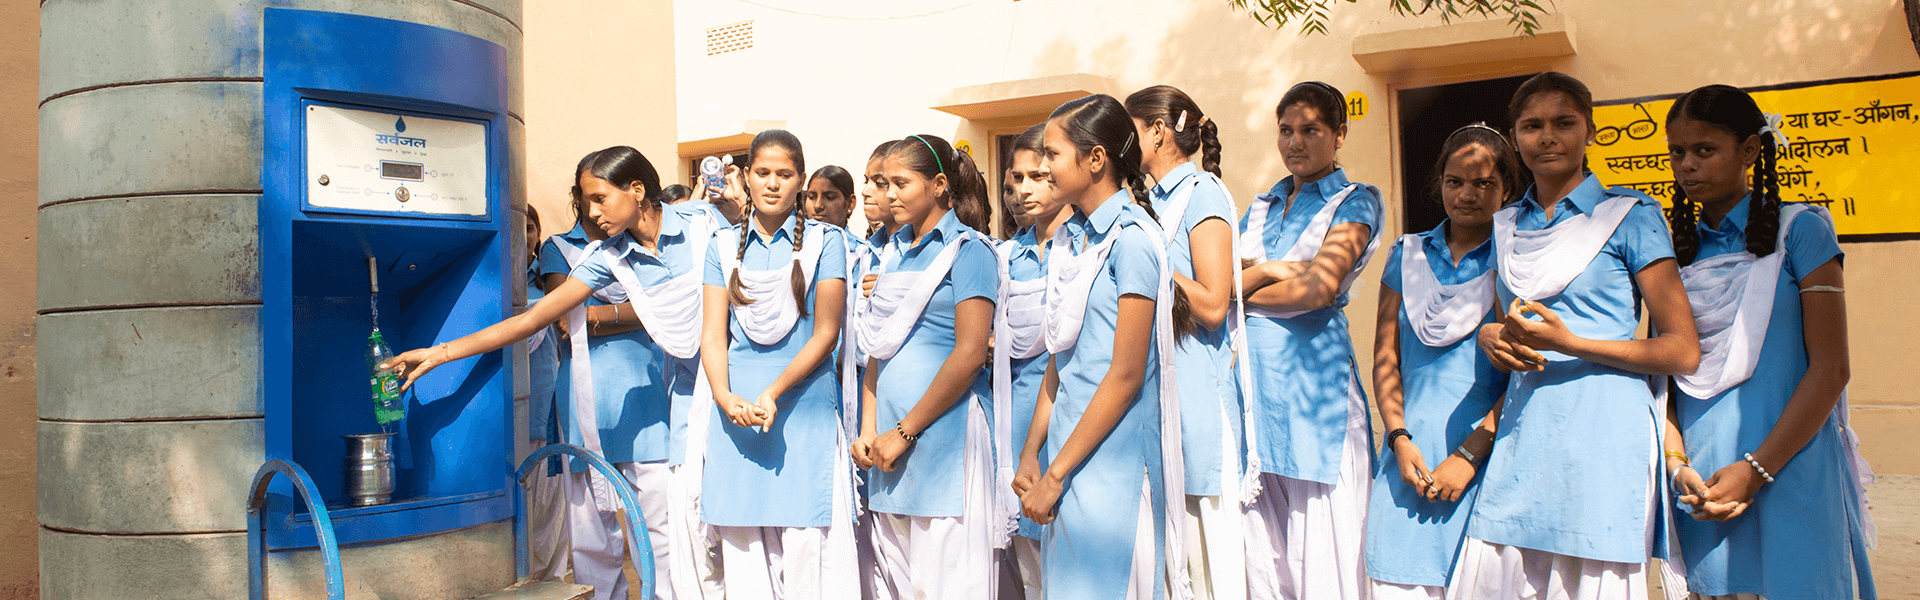 school-girls-using-sarvajal-water-atm